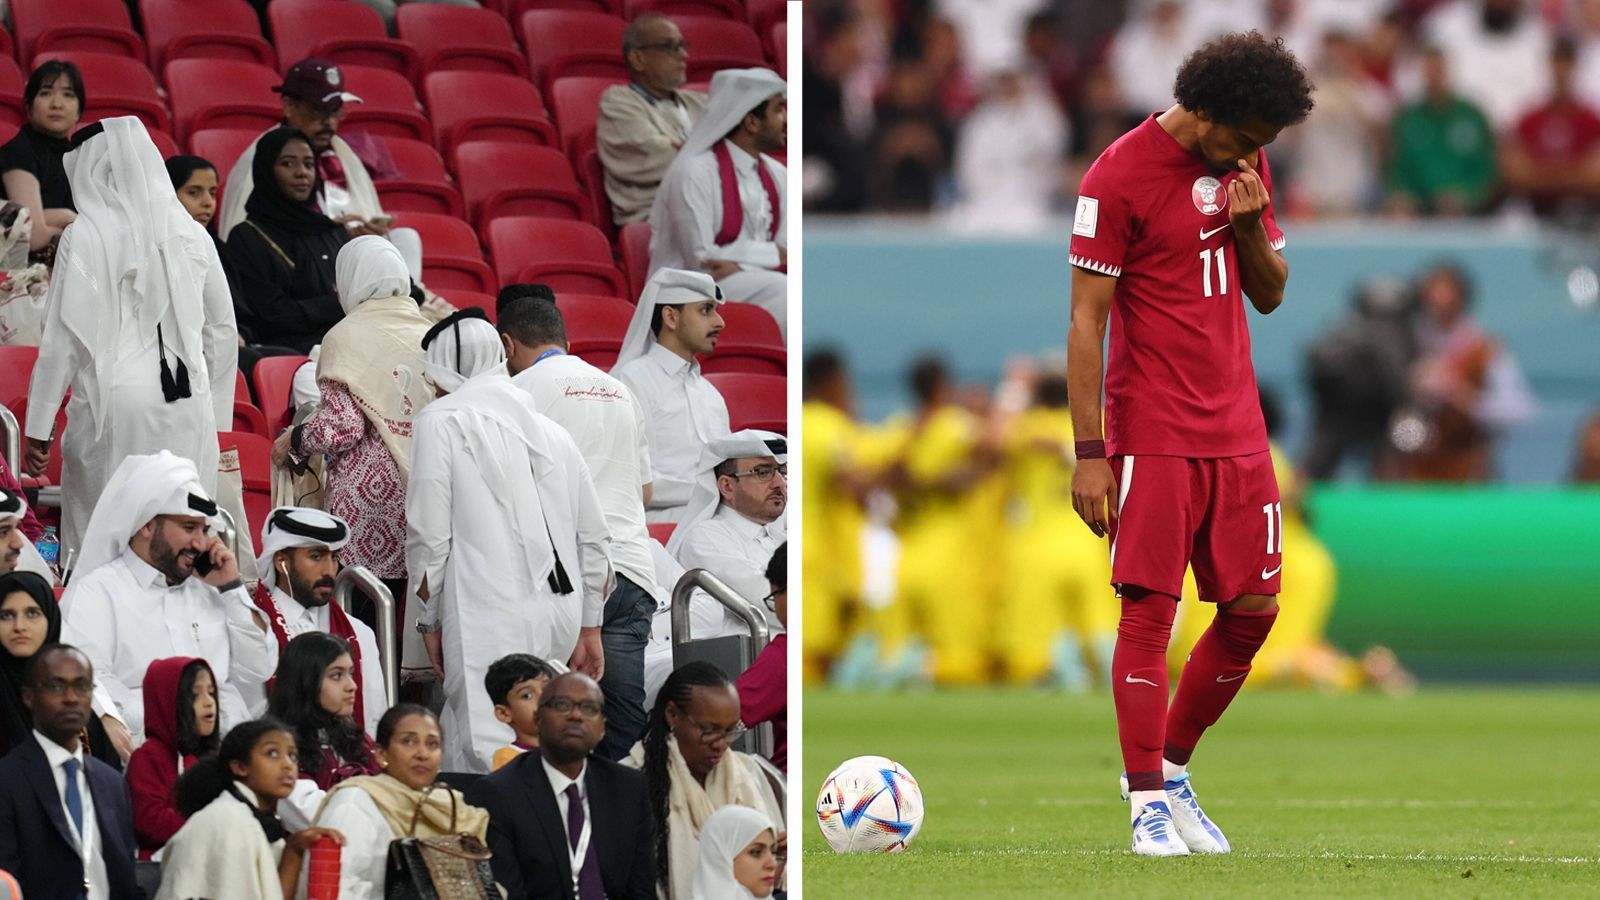 WM 2022: Katar-Fans verlassen Stadion bei Eröffnungsspiel vorzeitig